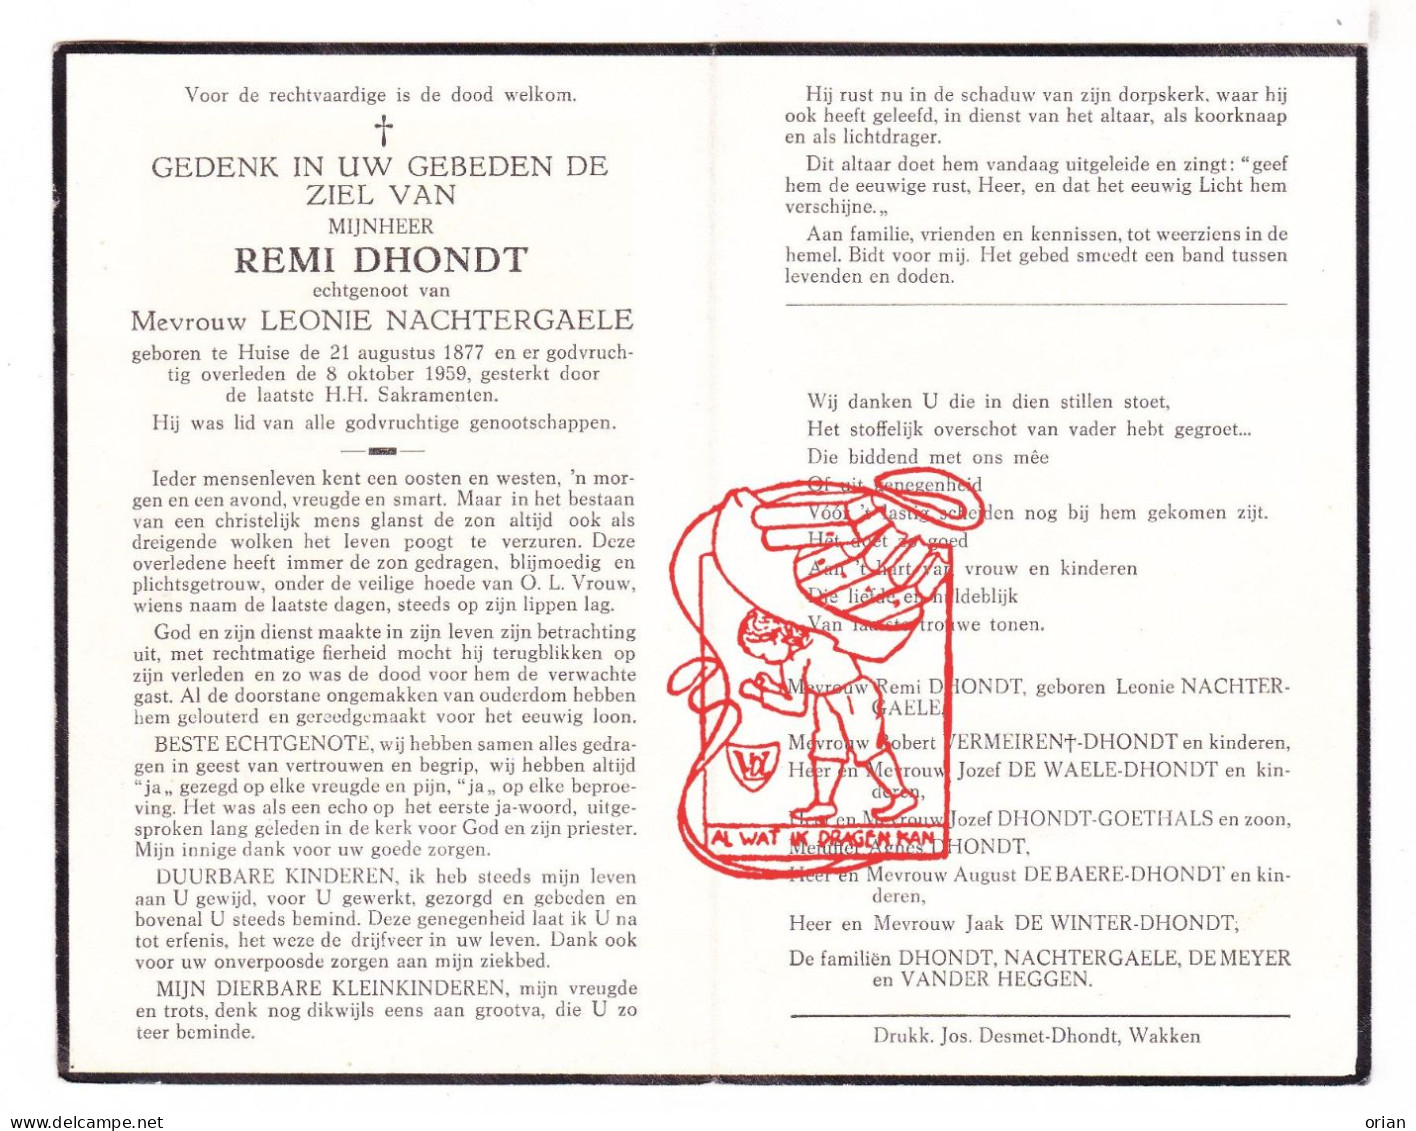 DP Remi Dhondt ° Huise Zingem 1877 † 1959 Nachtergaele Vermeiren De Waele Goethals De Baere Winter Vander Heggen Meyer - Devotion Images